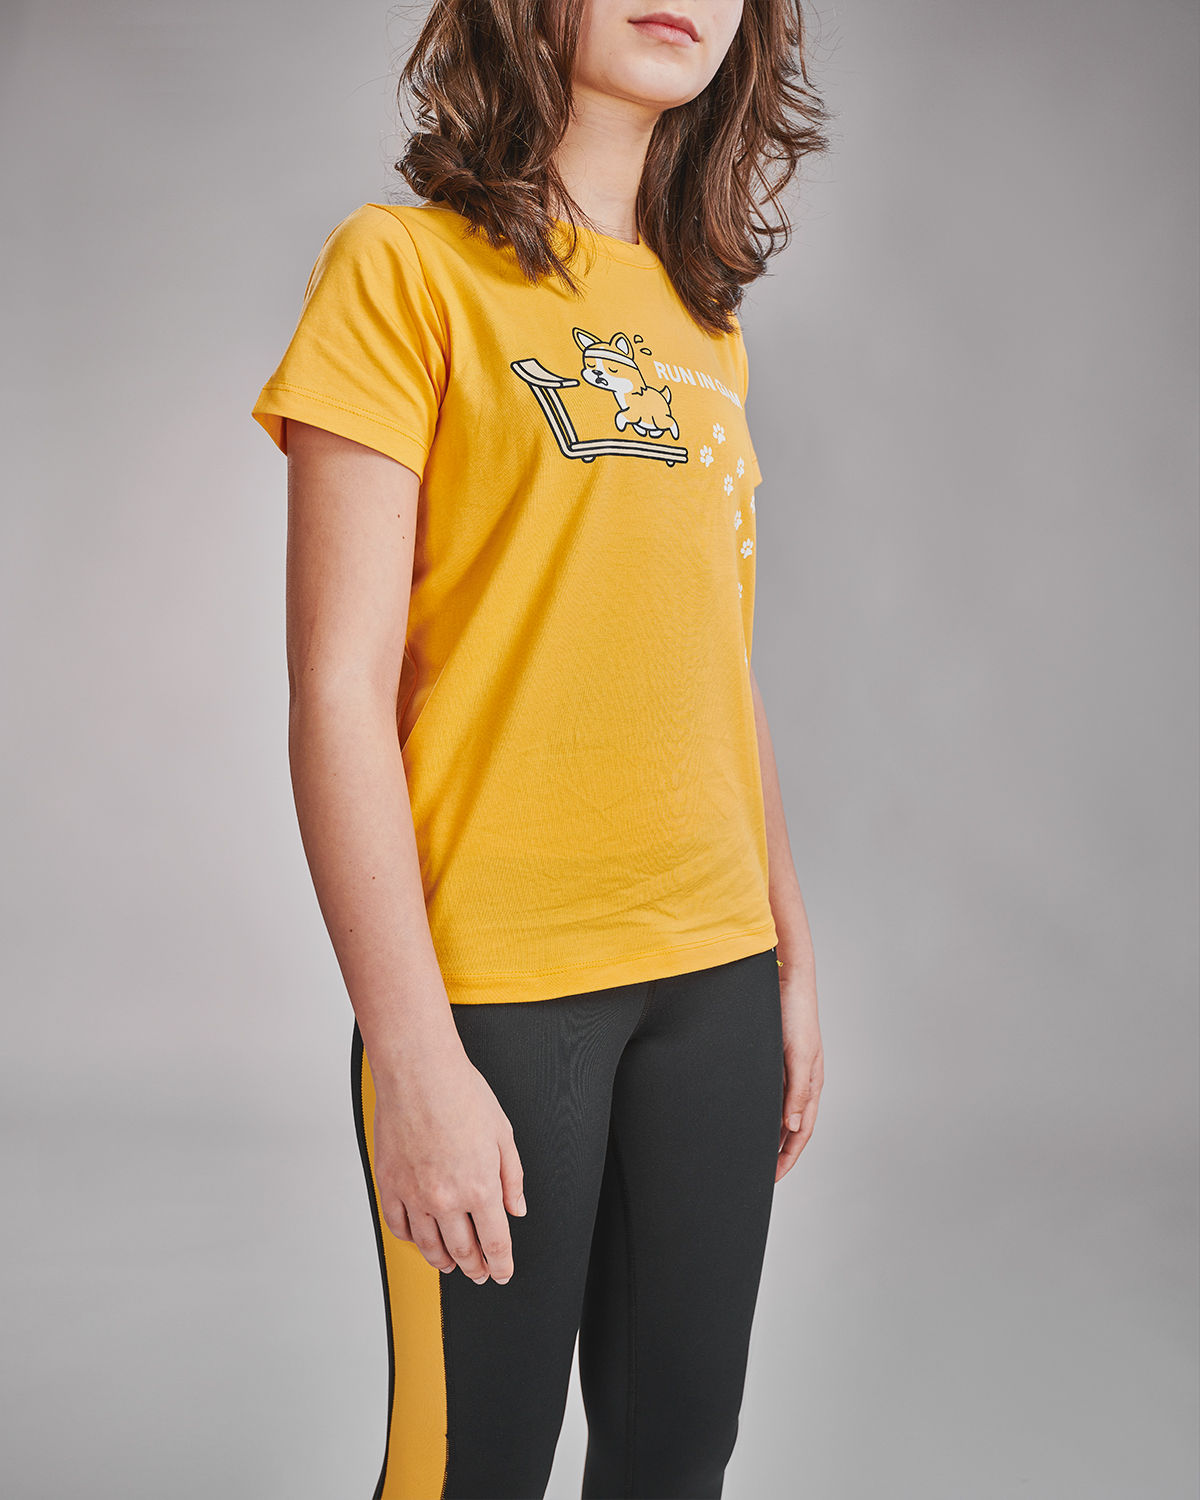 Atum Girl's vibrant basic T-shirt